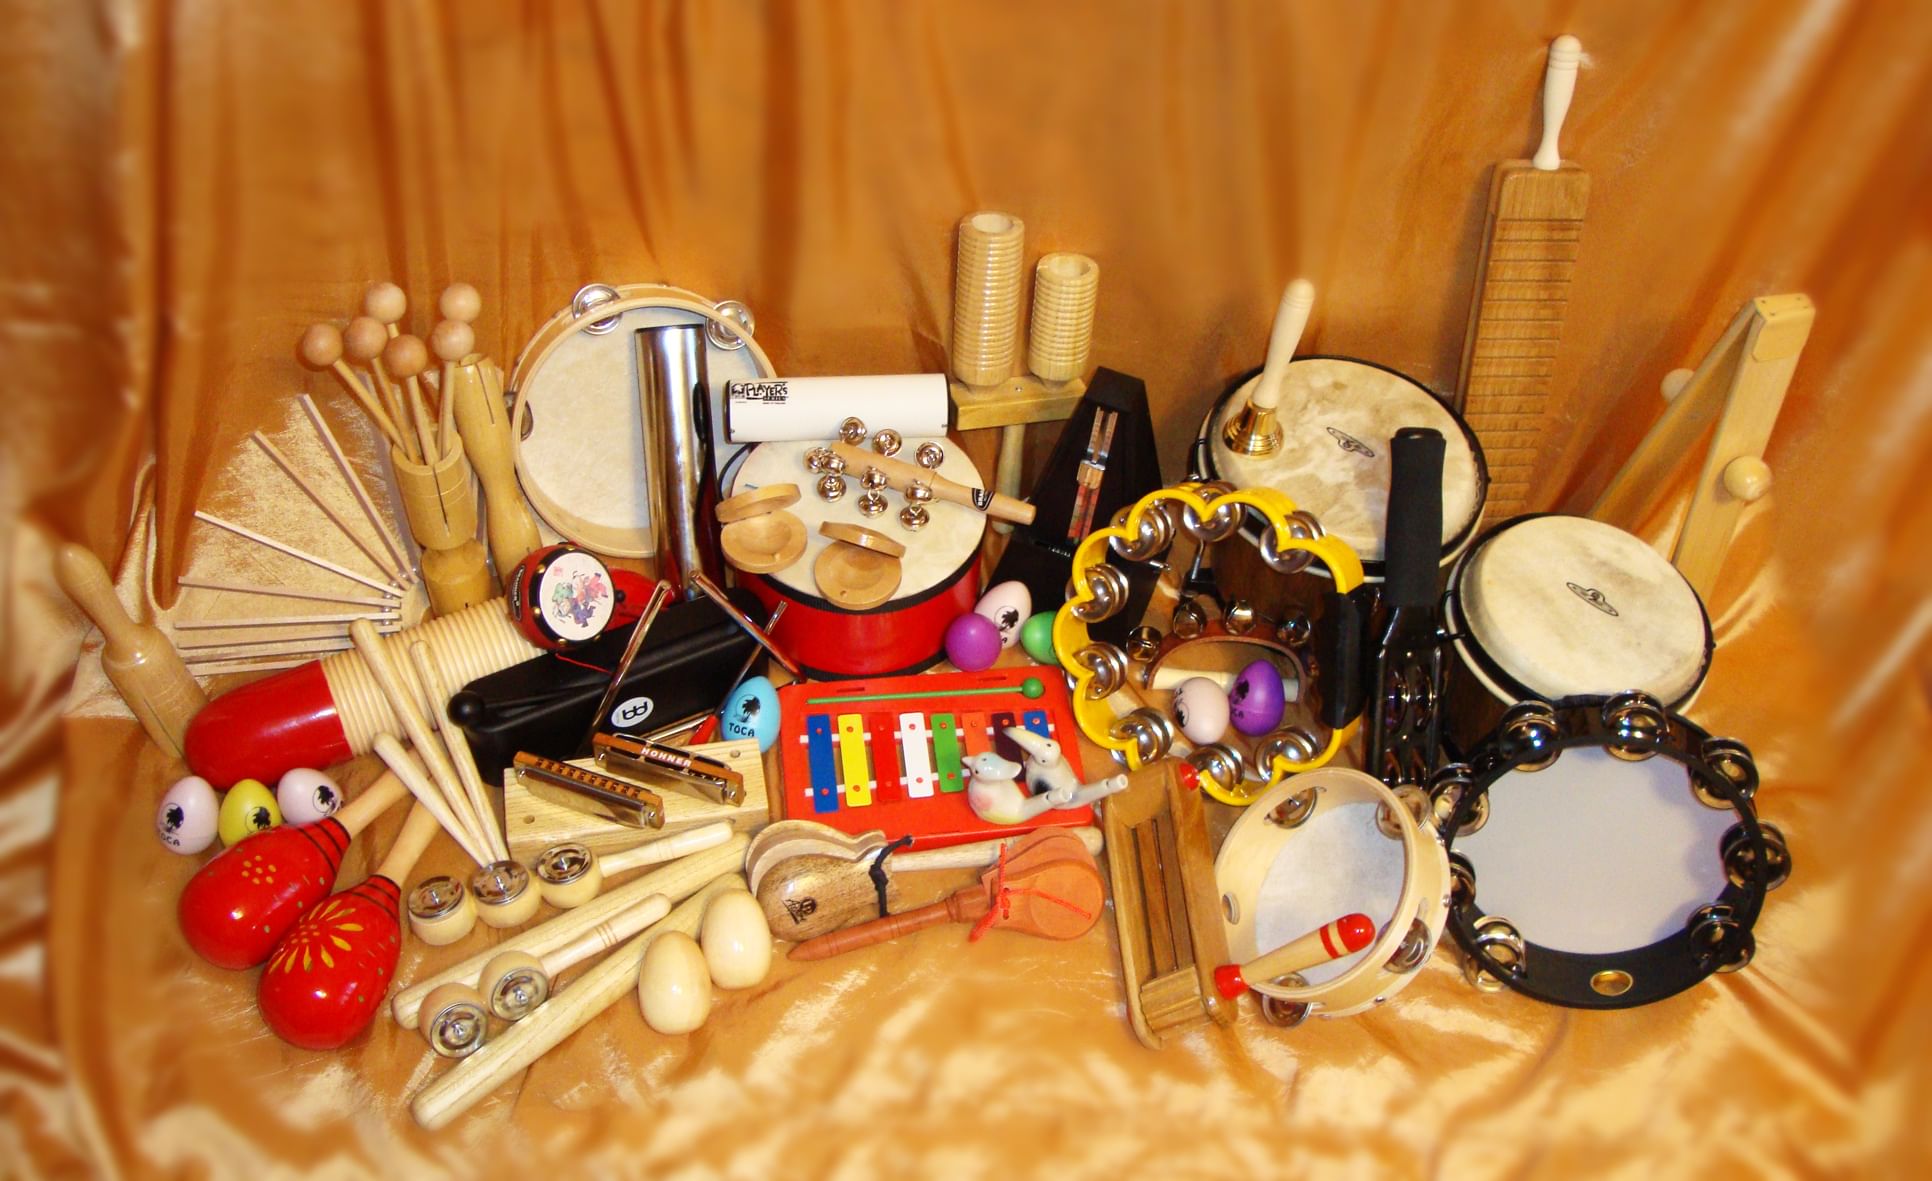 Achetez des instruments de musique pour enfants sur le babillard en Israël.